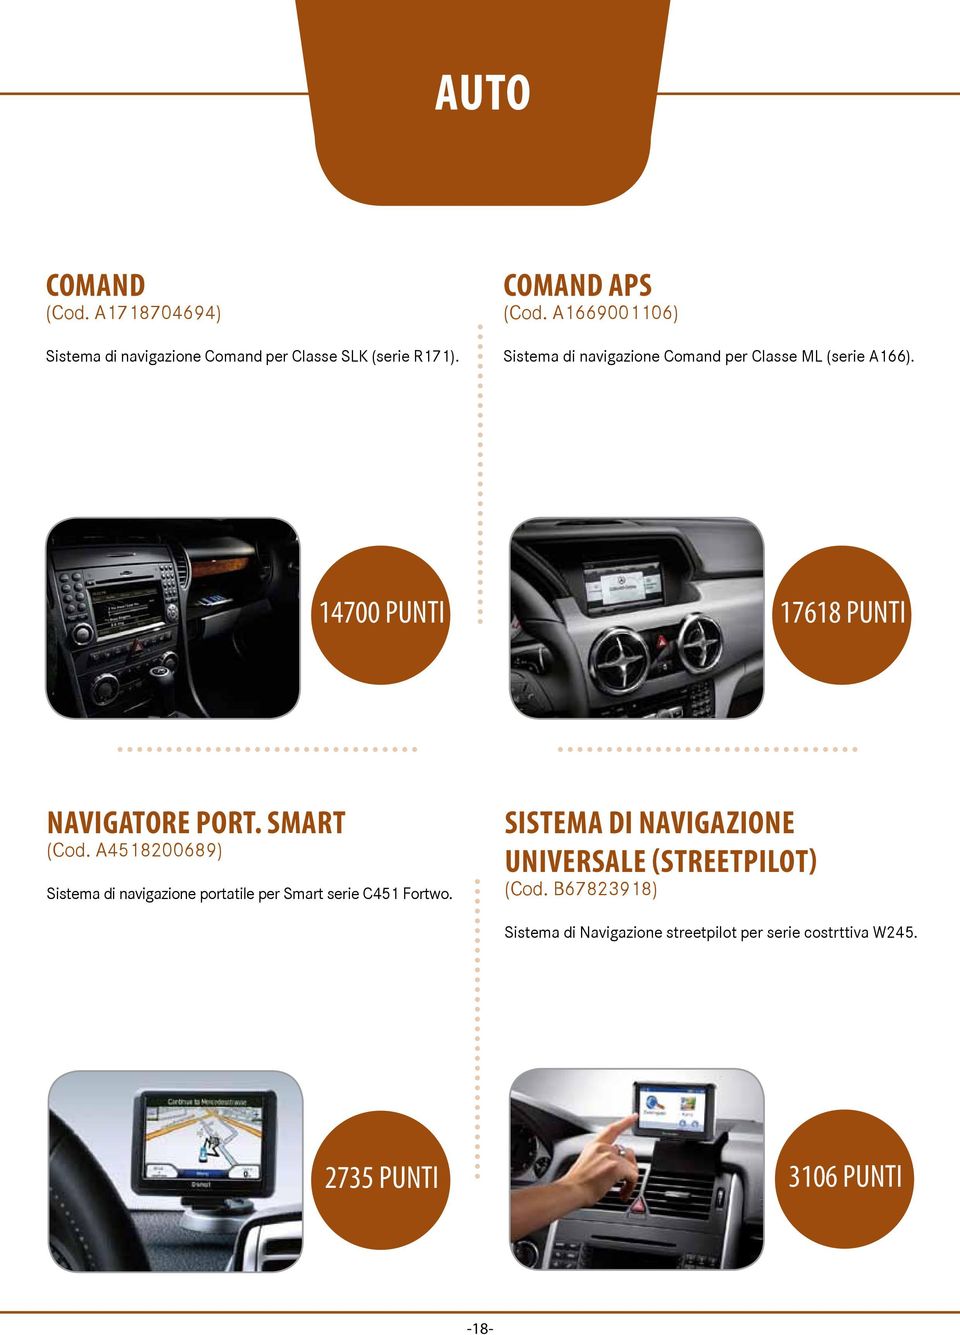 SMART (Cod. A4518200689) Sistema di navigazione portatile per Smart serie C451 Fortwo.